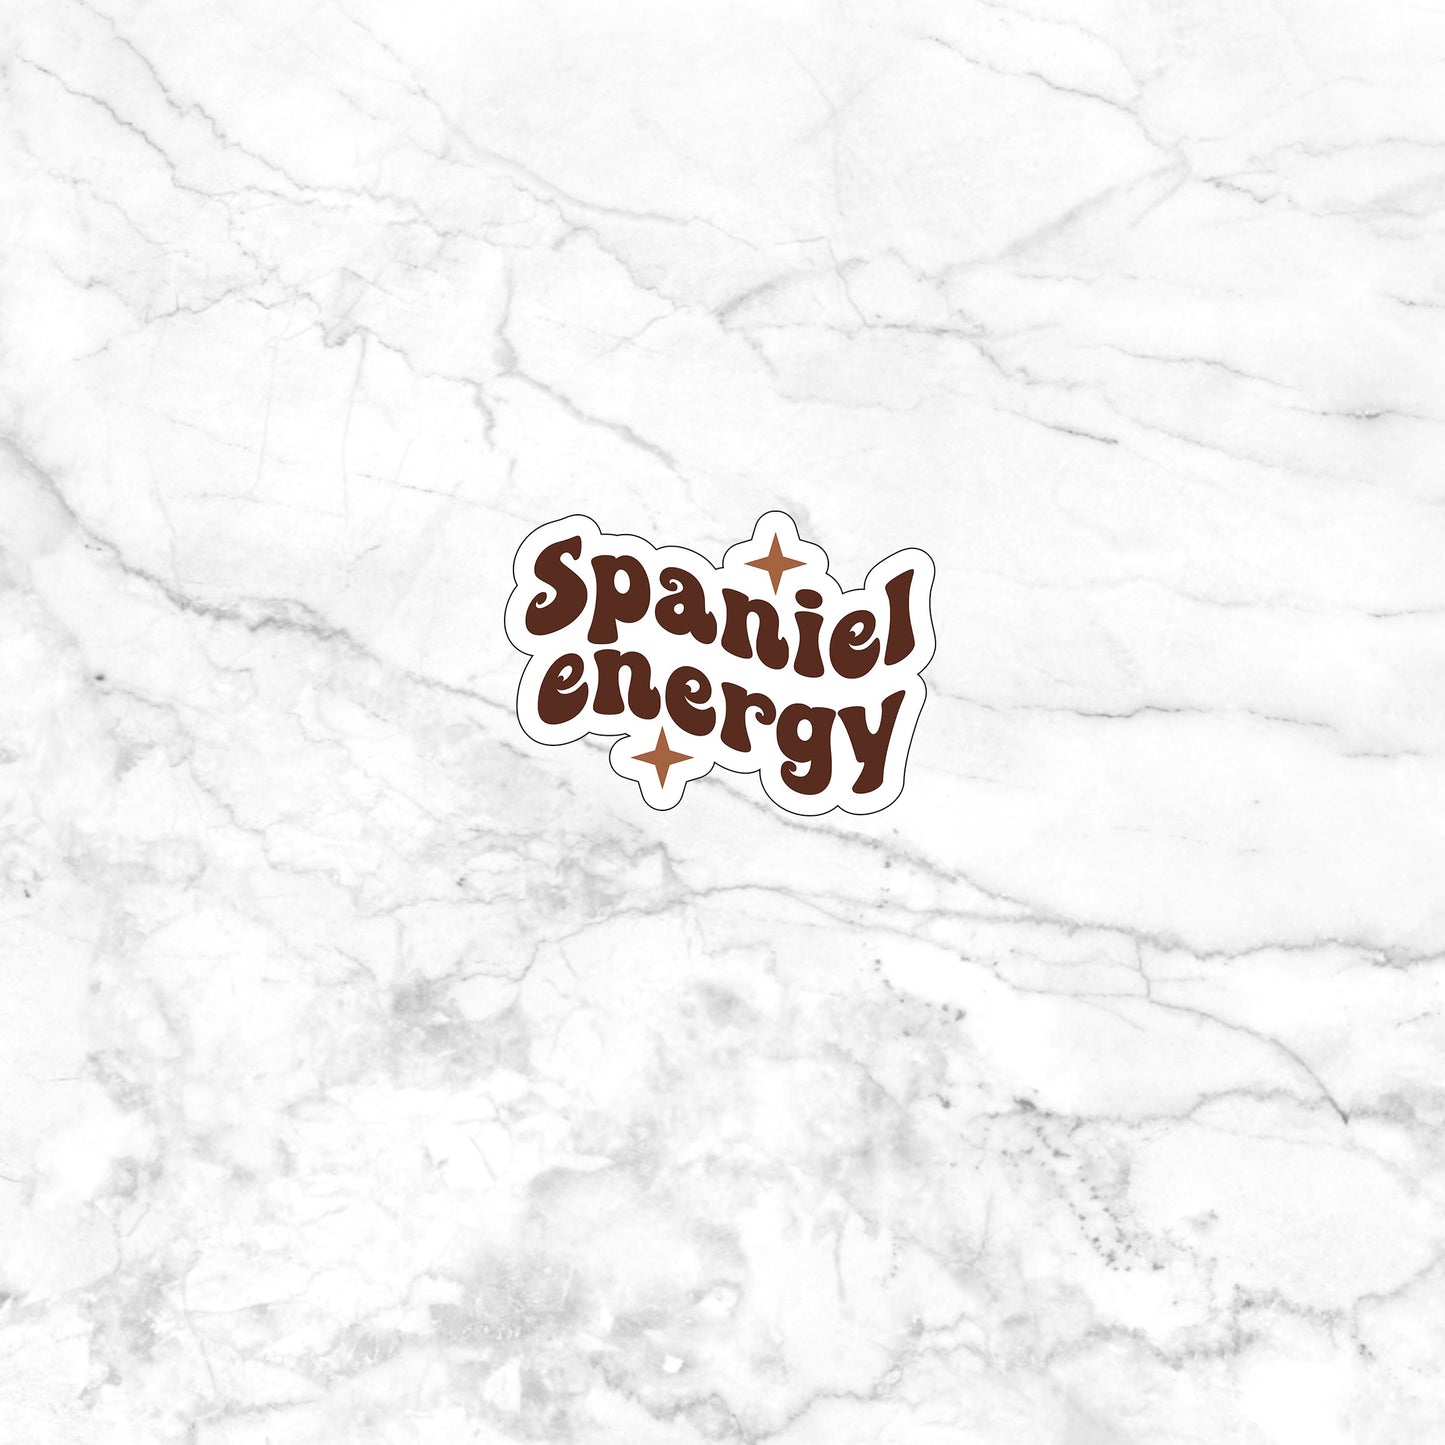 Spaniel energy  Sticker,  Vinyl sticker, laptop sticker, Tablet sticker